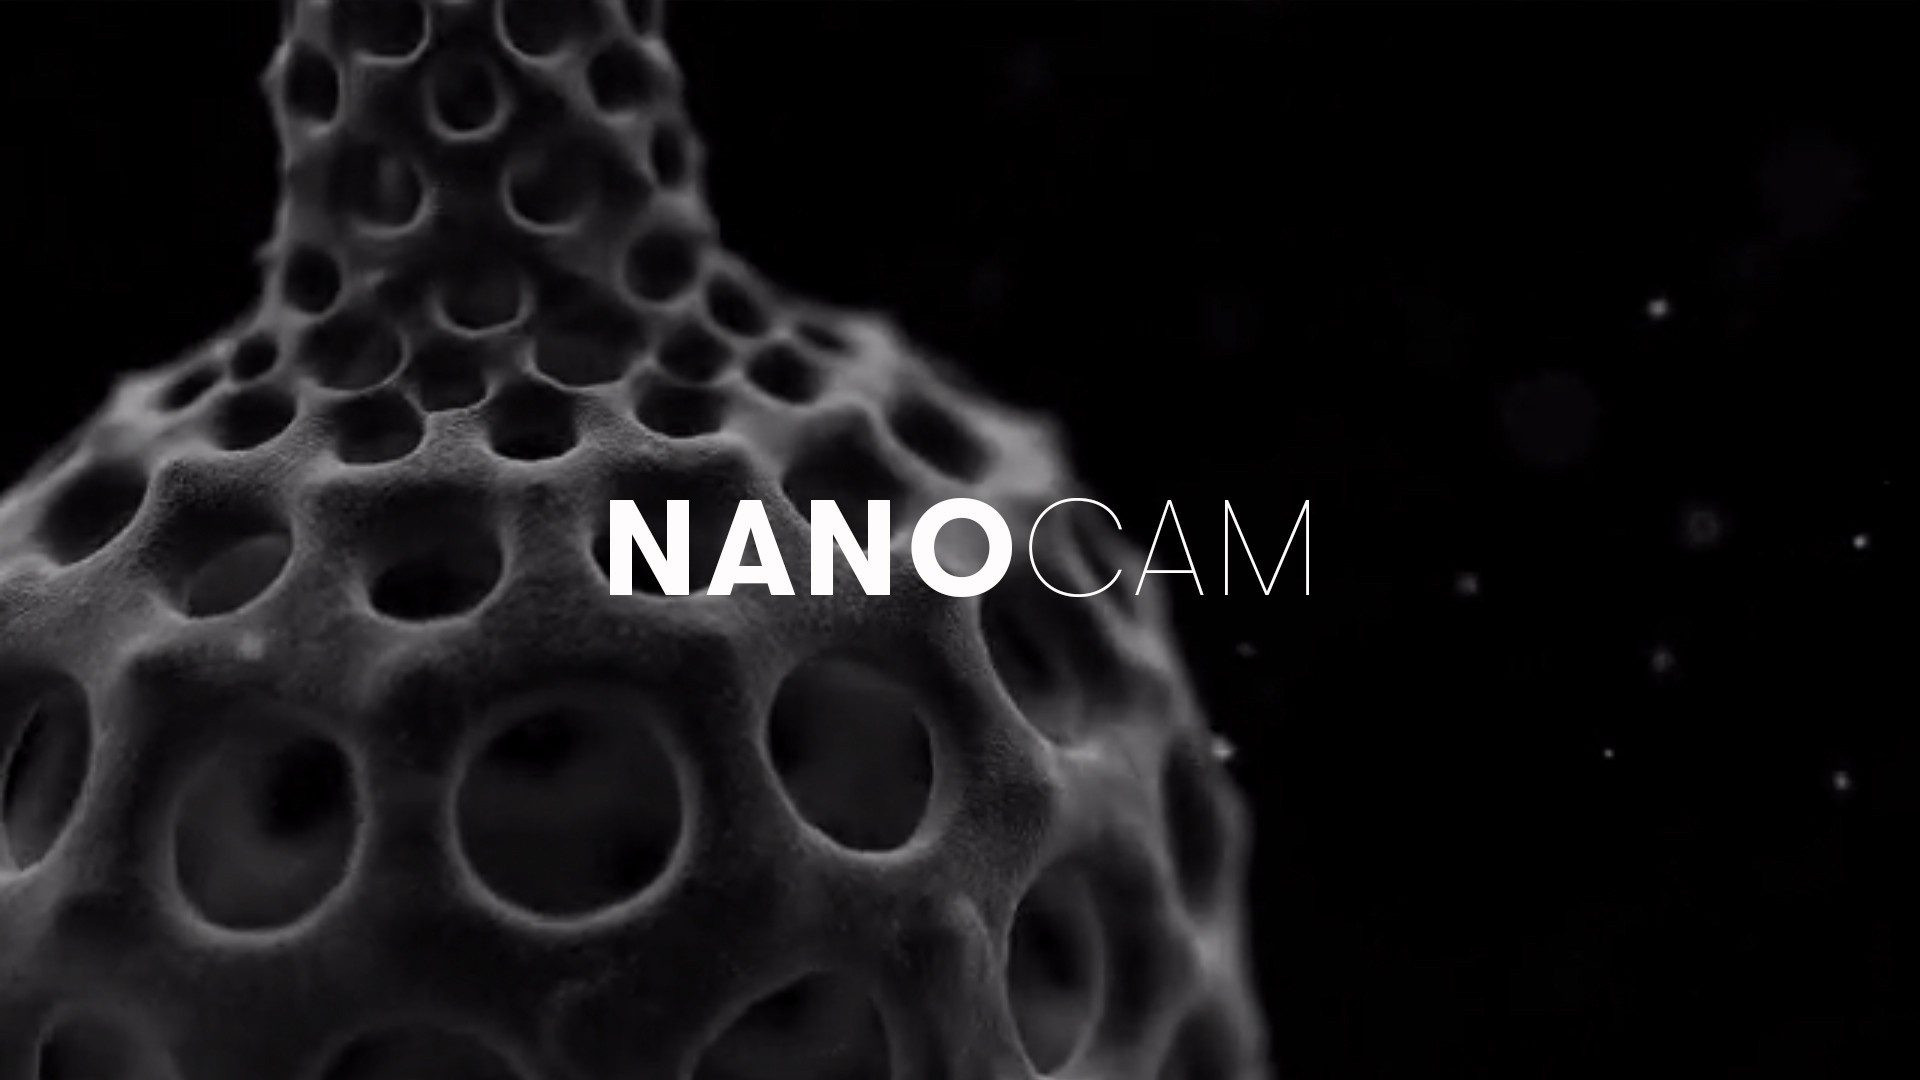 Nanocam